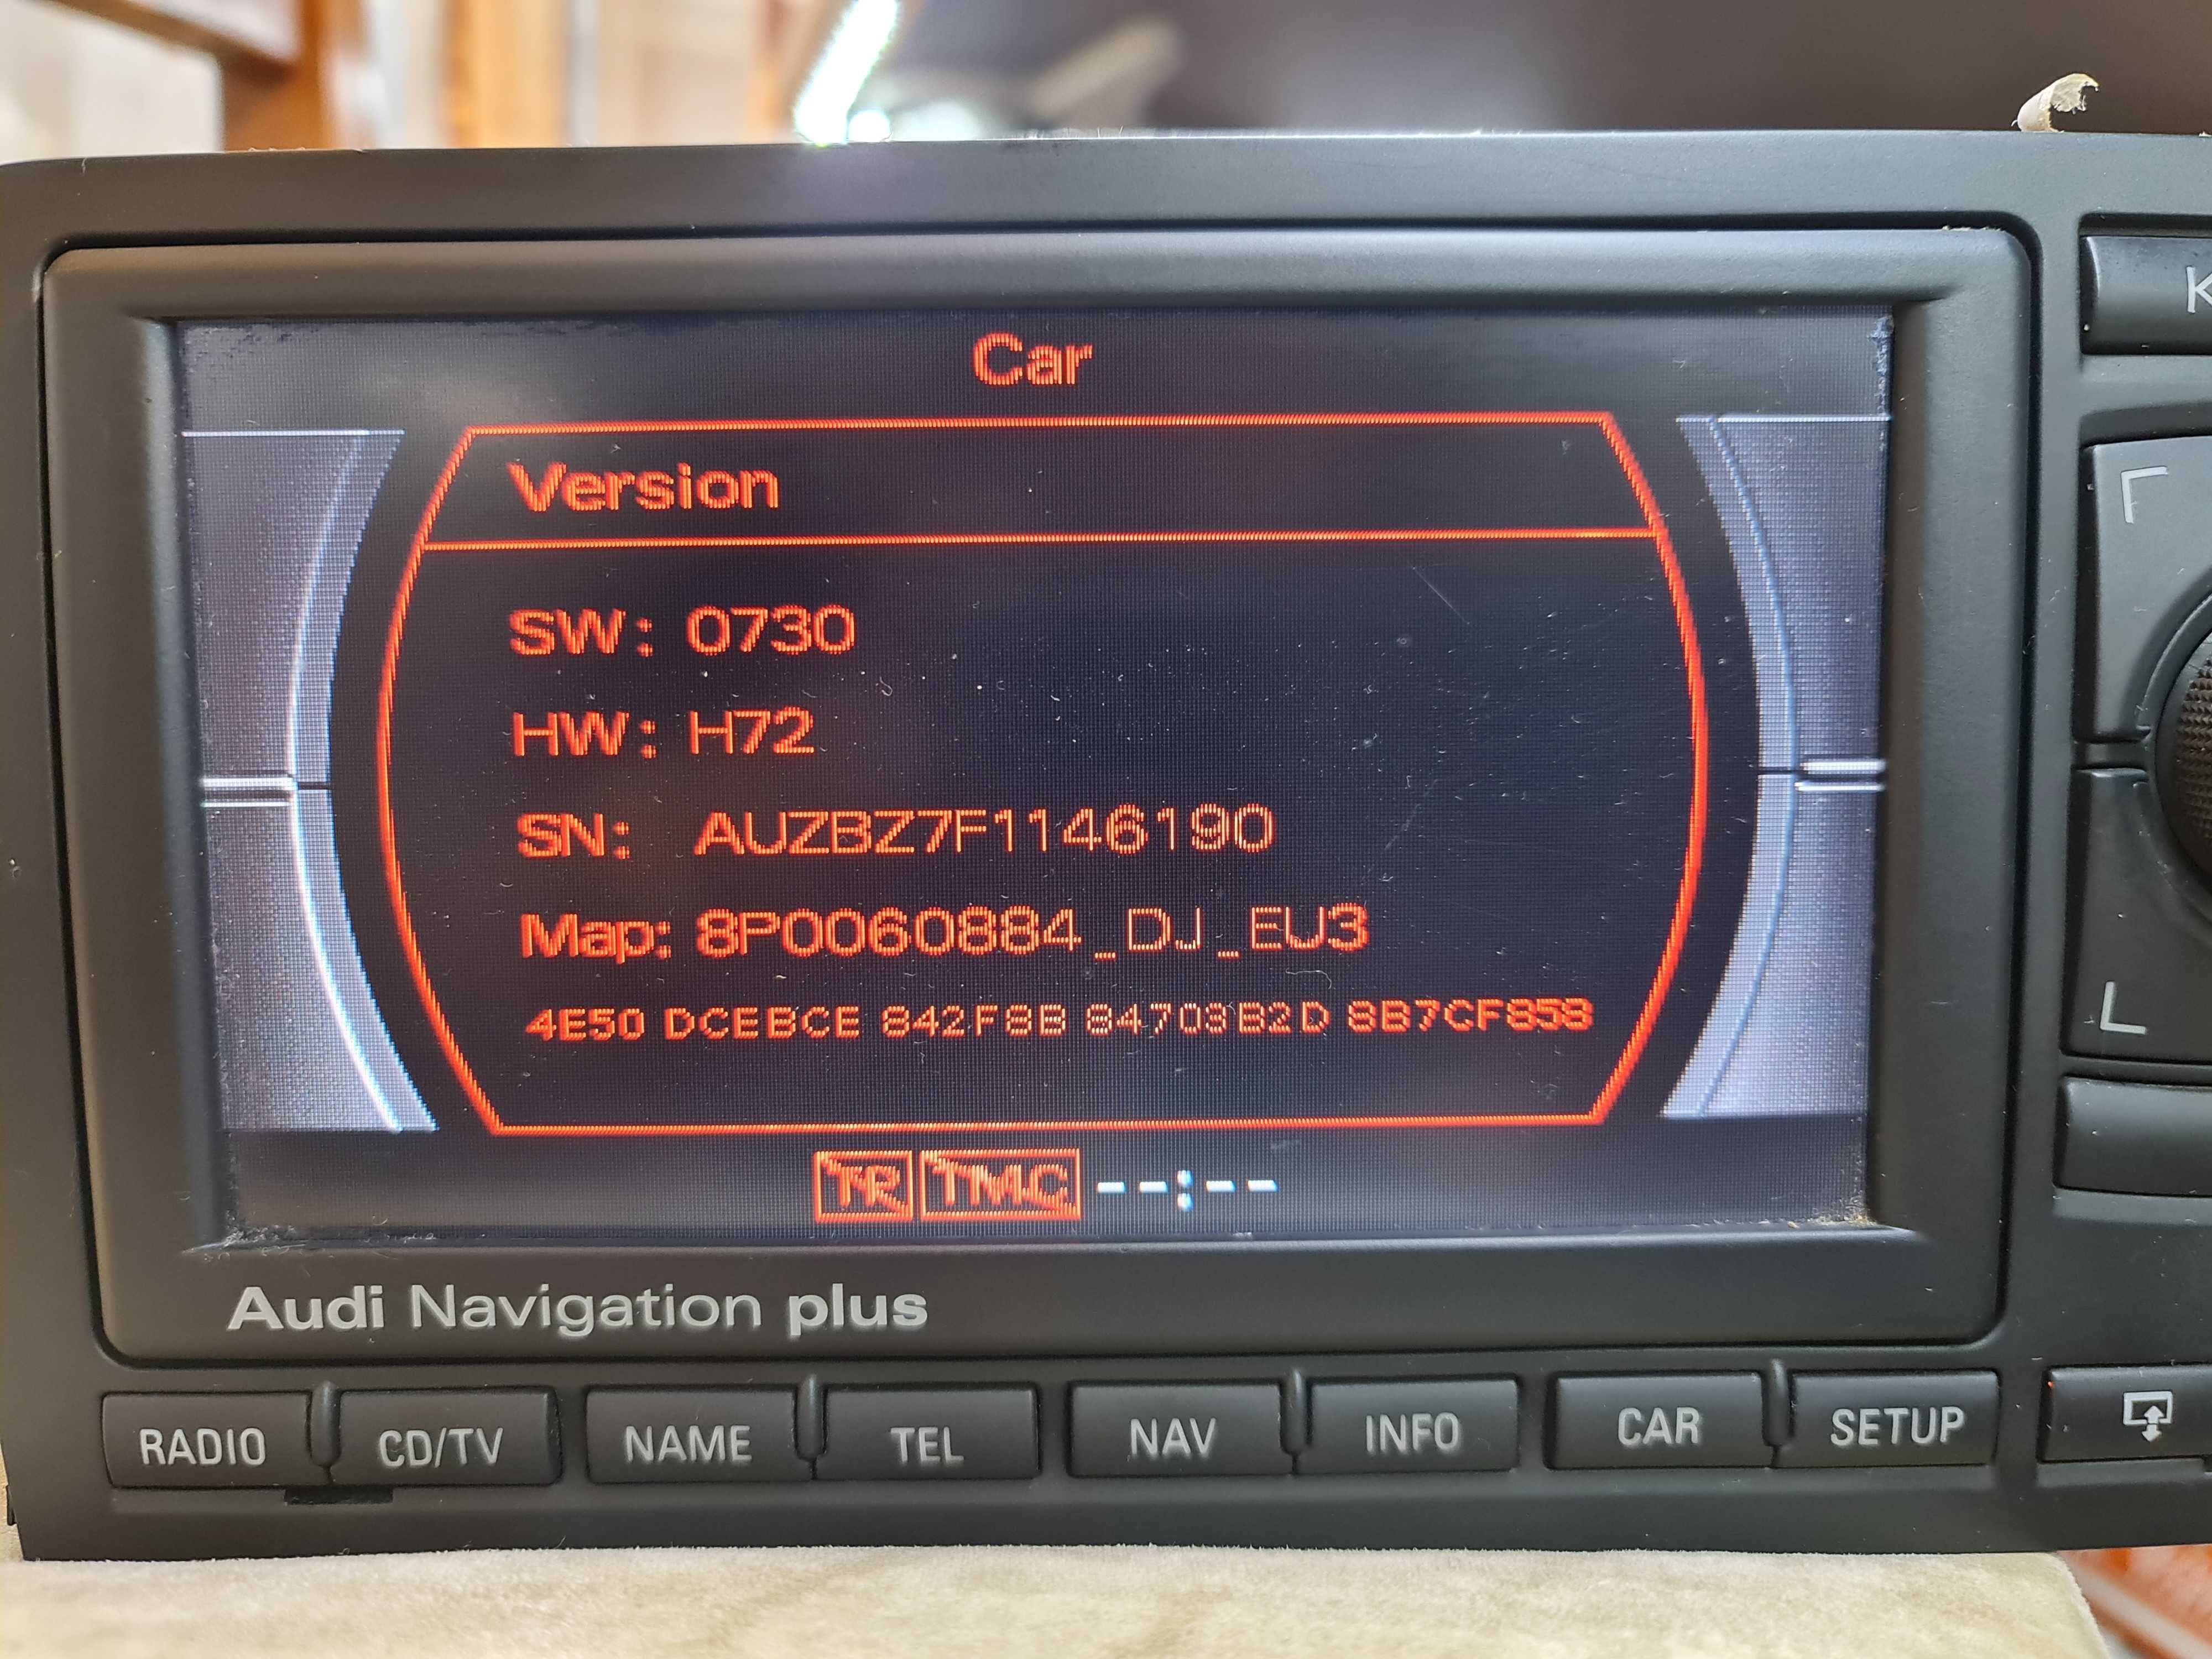 Navigatie Audi A3 cu harti pe card sd